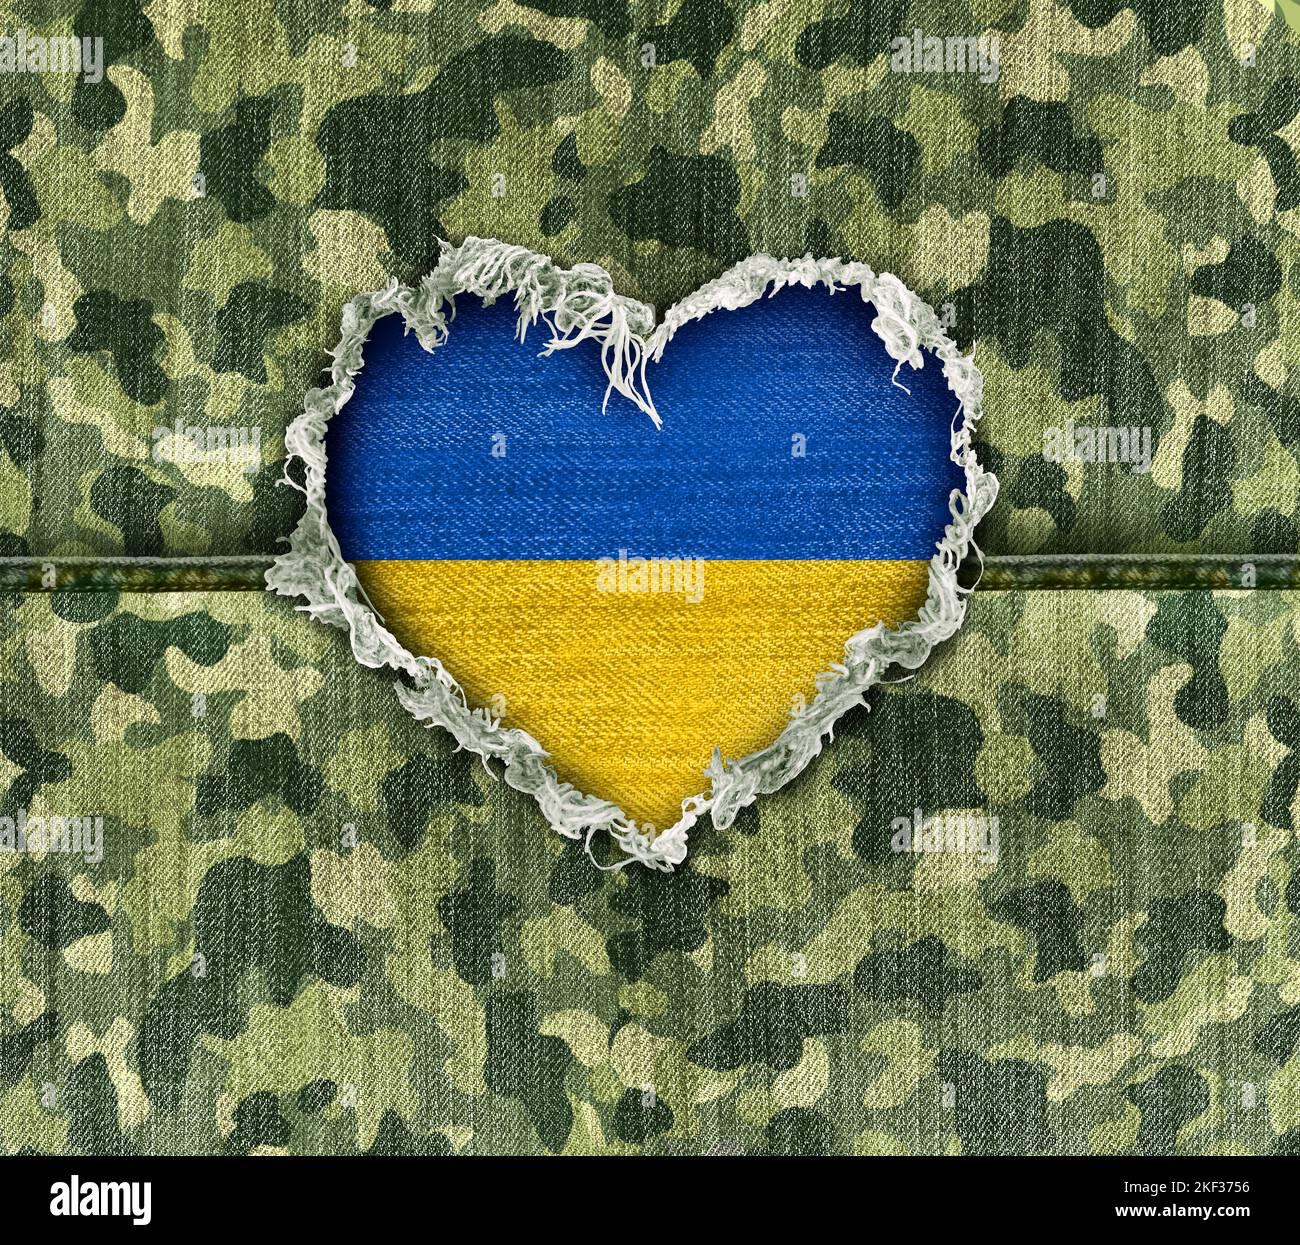 Ukraine Military Hero Love als ukrainischer Tarnstoff für den Krieg mit einem herzförmigen Loch, das den Respekt vor Helden darstellt Stockfoto